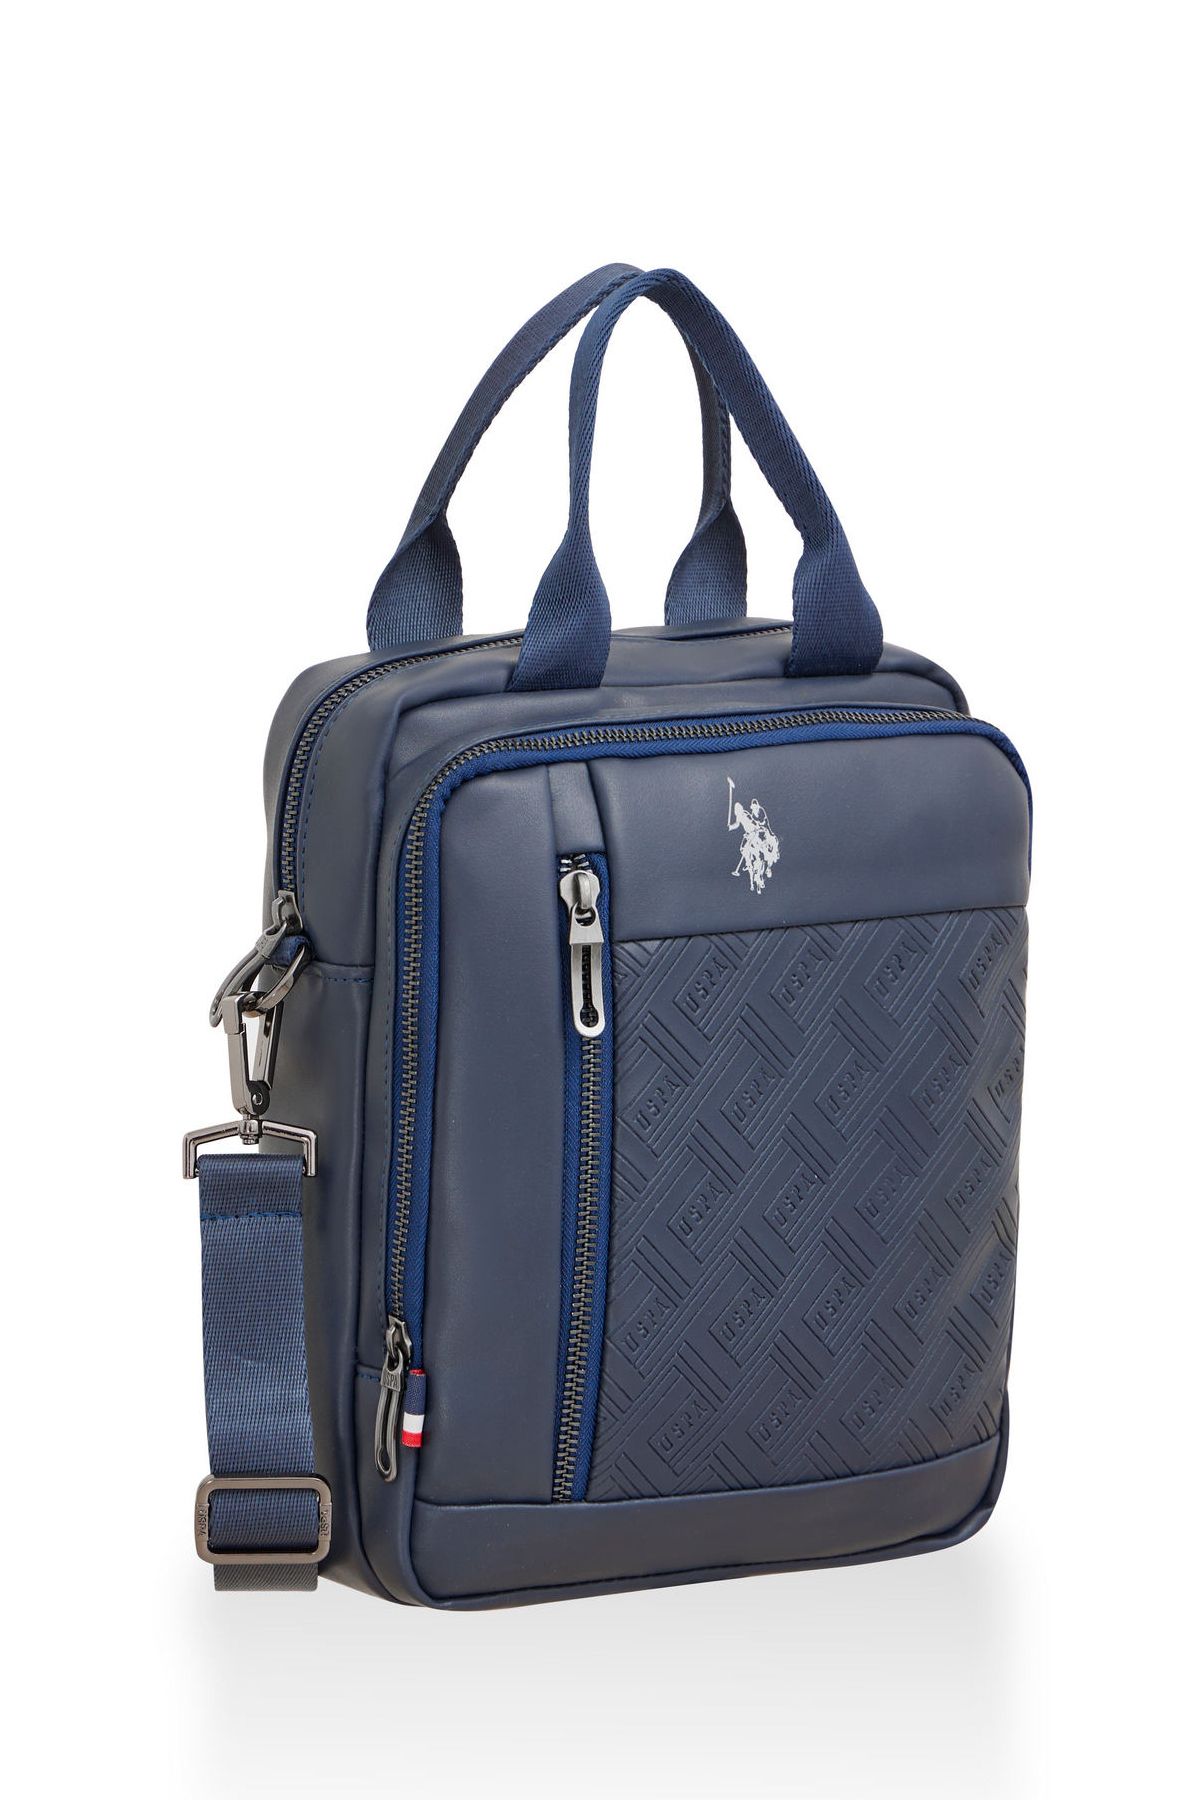 U.S. Polo Assn. U.S. Polo Assn 23645-23646-23647 El çantası Askılı çanta omuz çantası LACİVERT